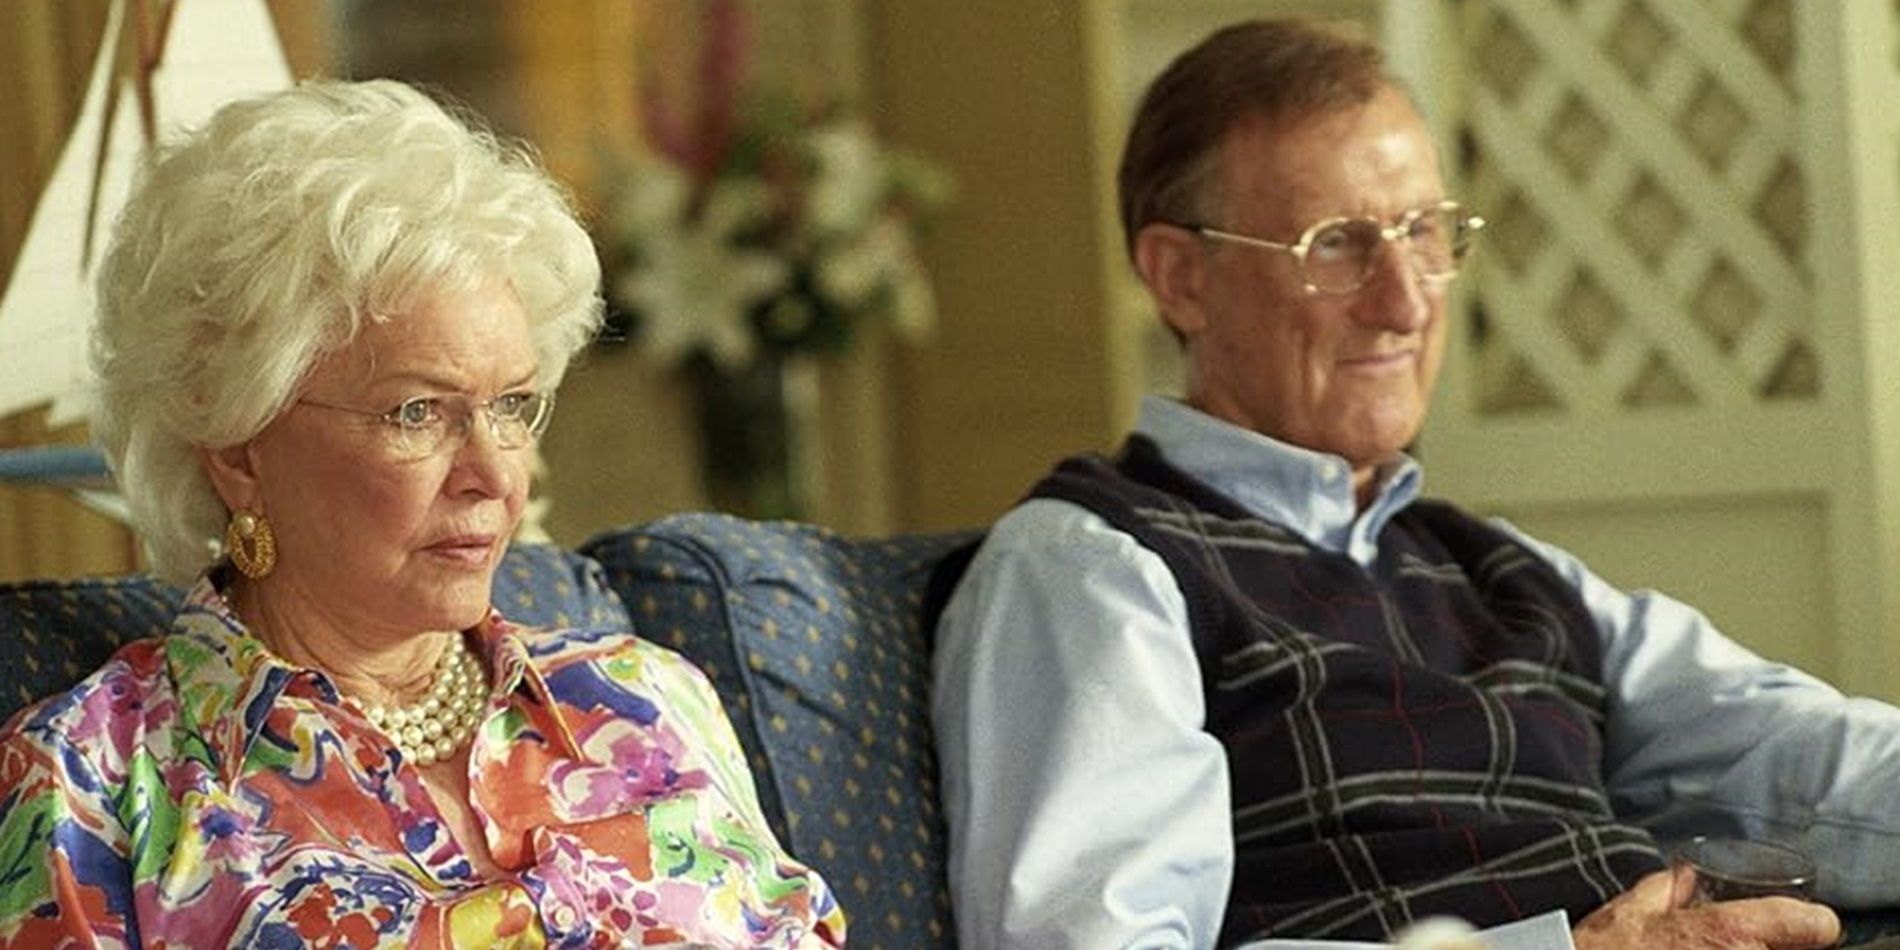 George HW Bush and Barbara Bush sitting on a couch in W